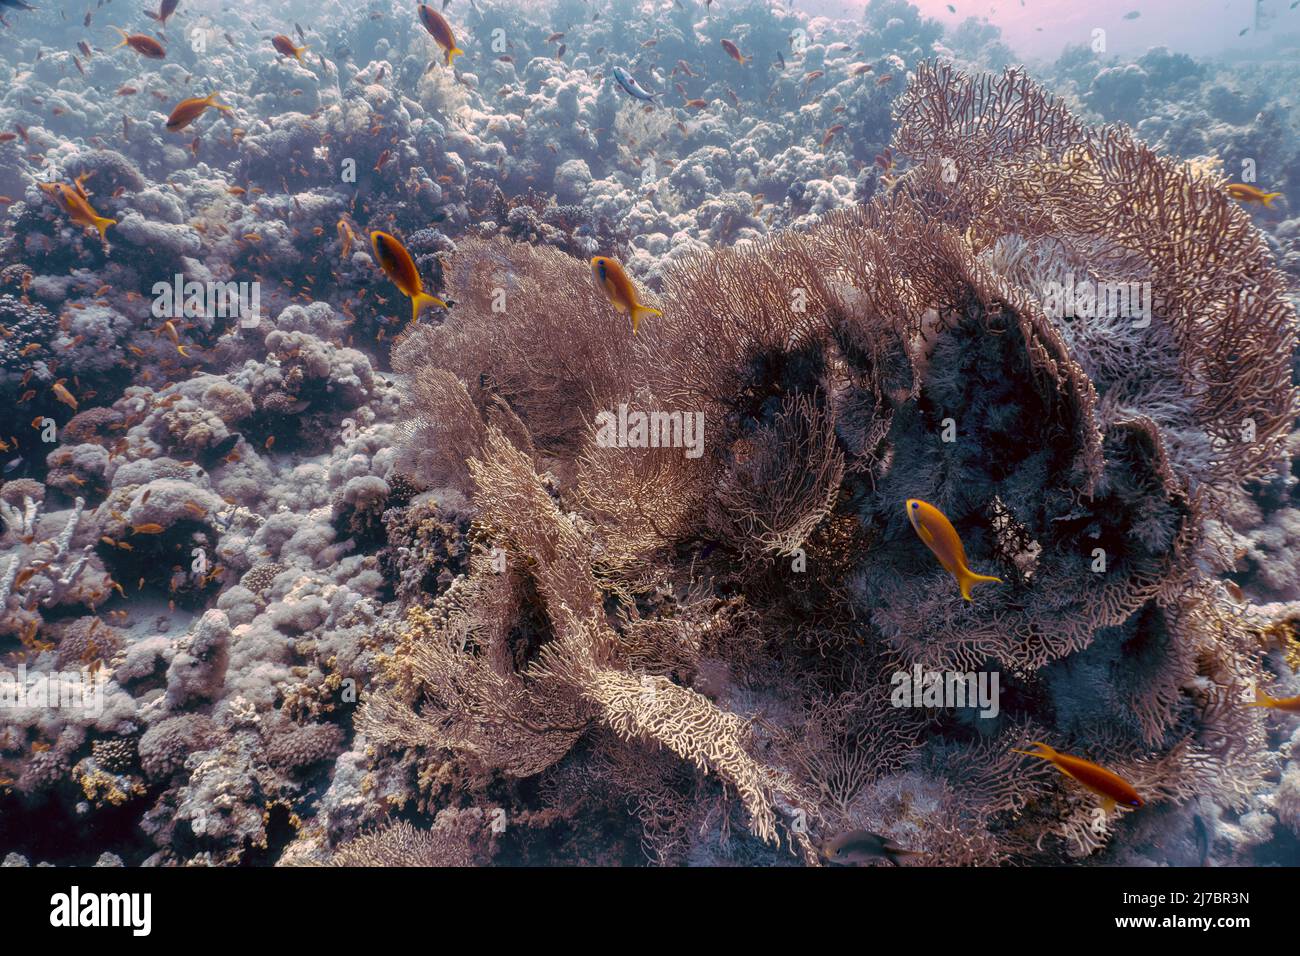 Ventilateurs géants de la mer gorgonienne (Subergorgia hicksoni) dans la mer Rouge, Égypte Banque D'Images